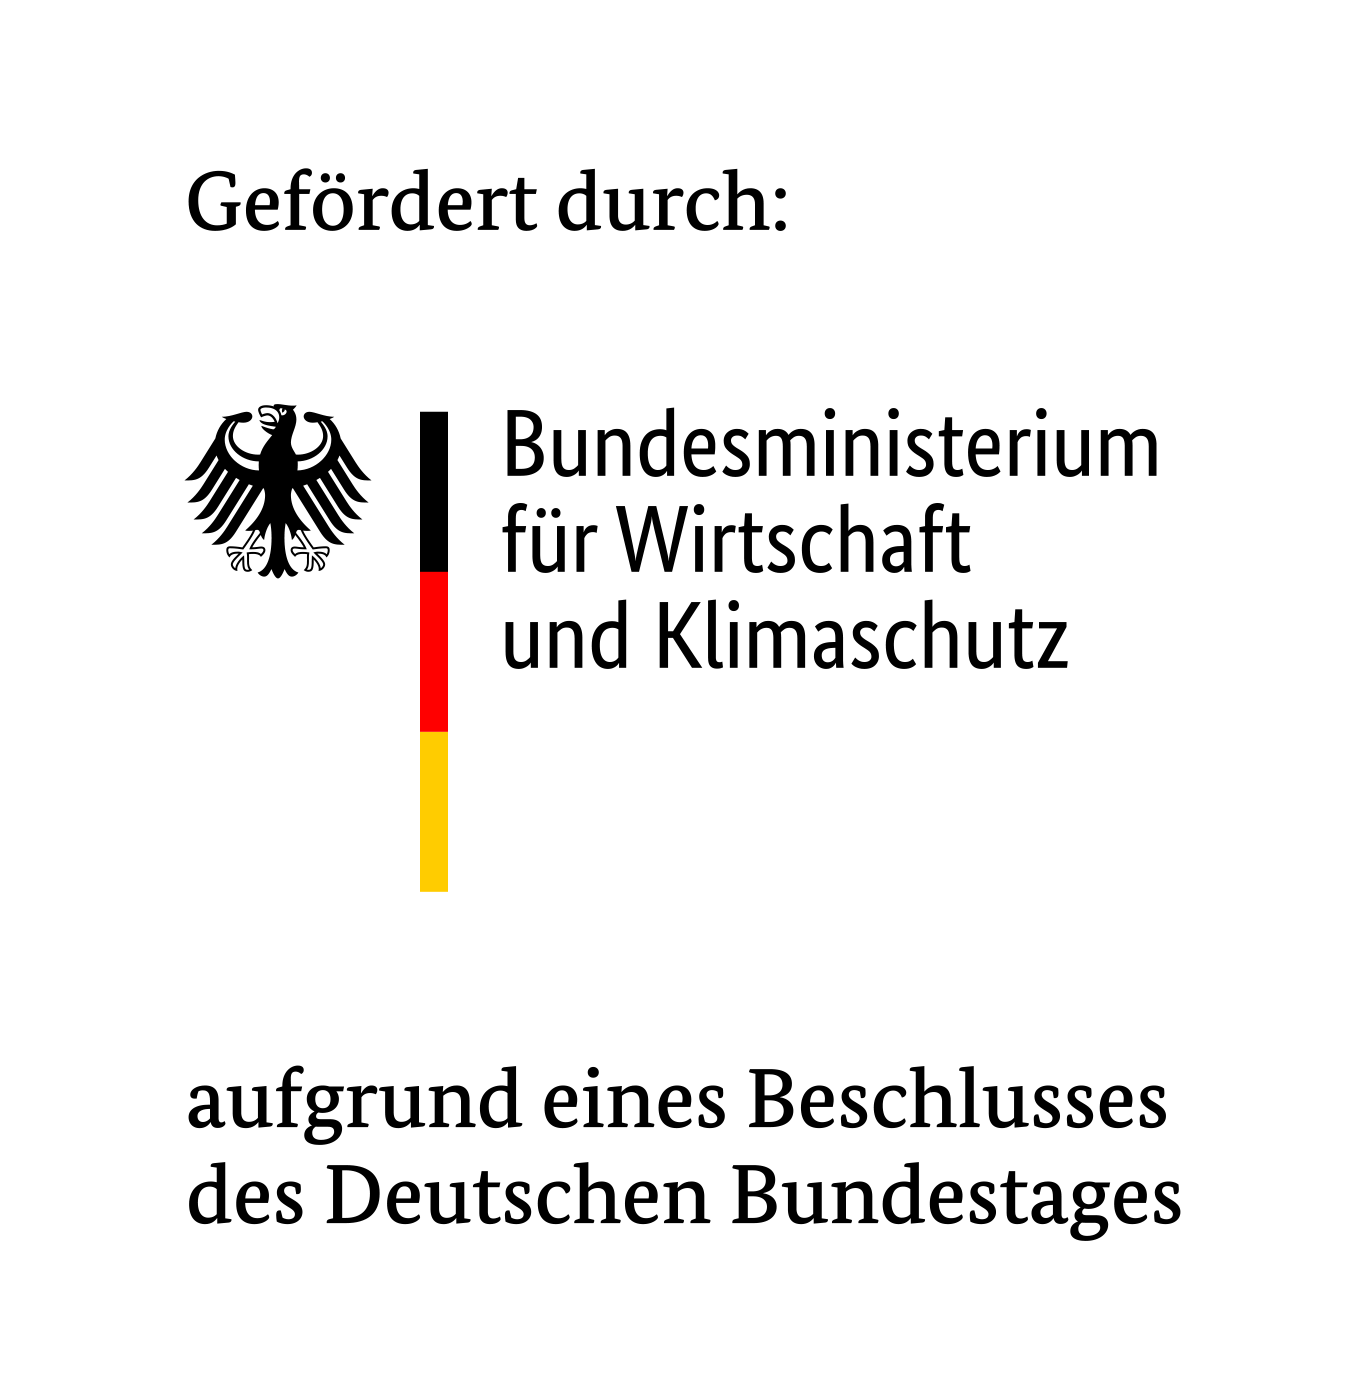 Gefördert durch Bundesministerium für Wirtschaft und Klimaschutz aufgrund eines Beschlusses des Deutschn Bundestages